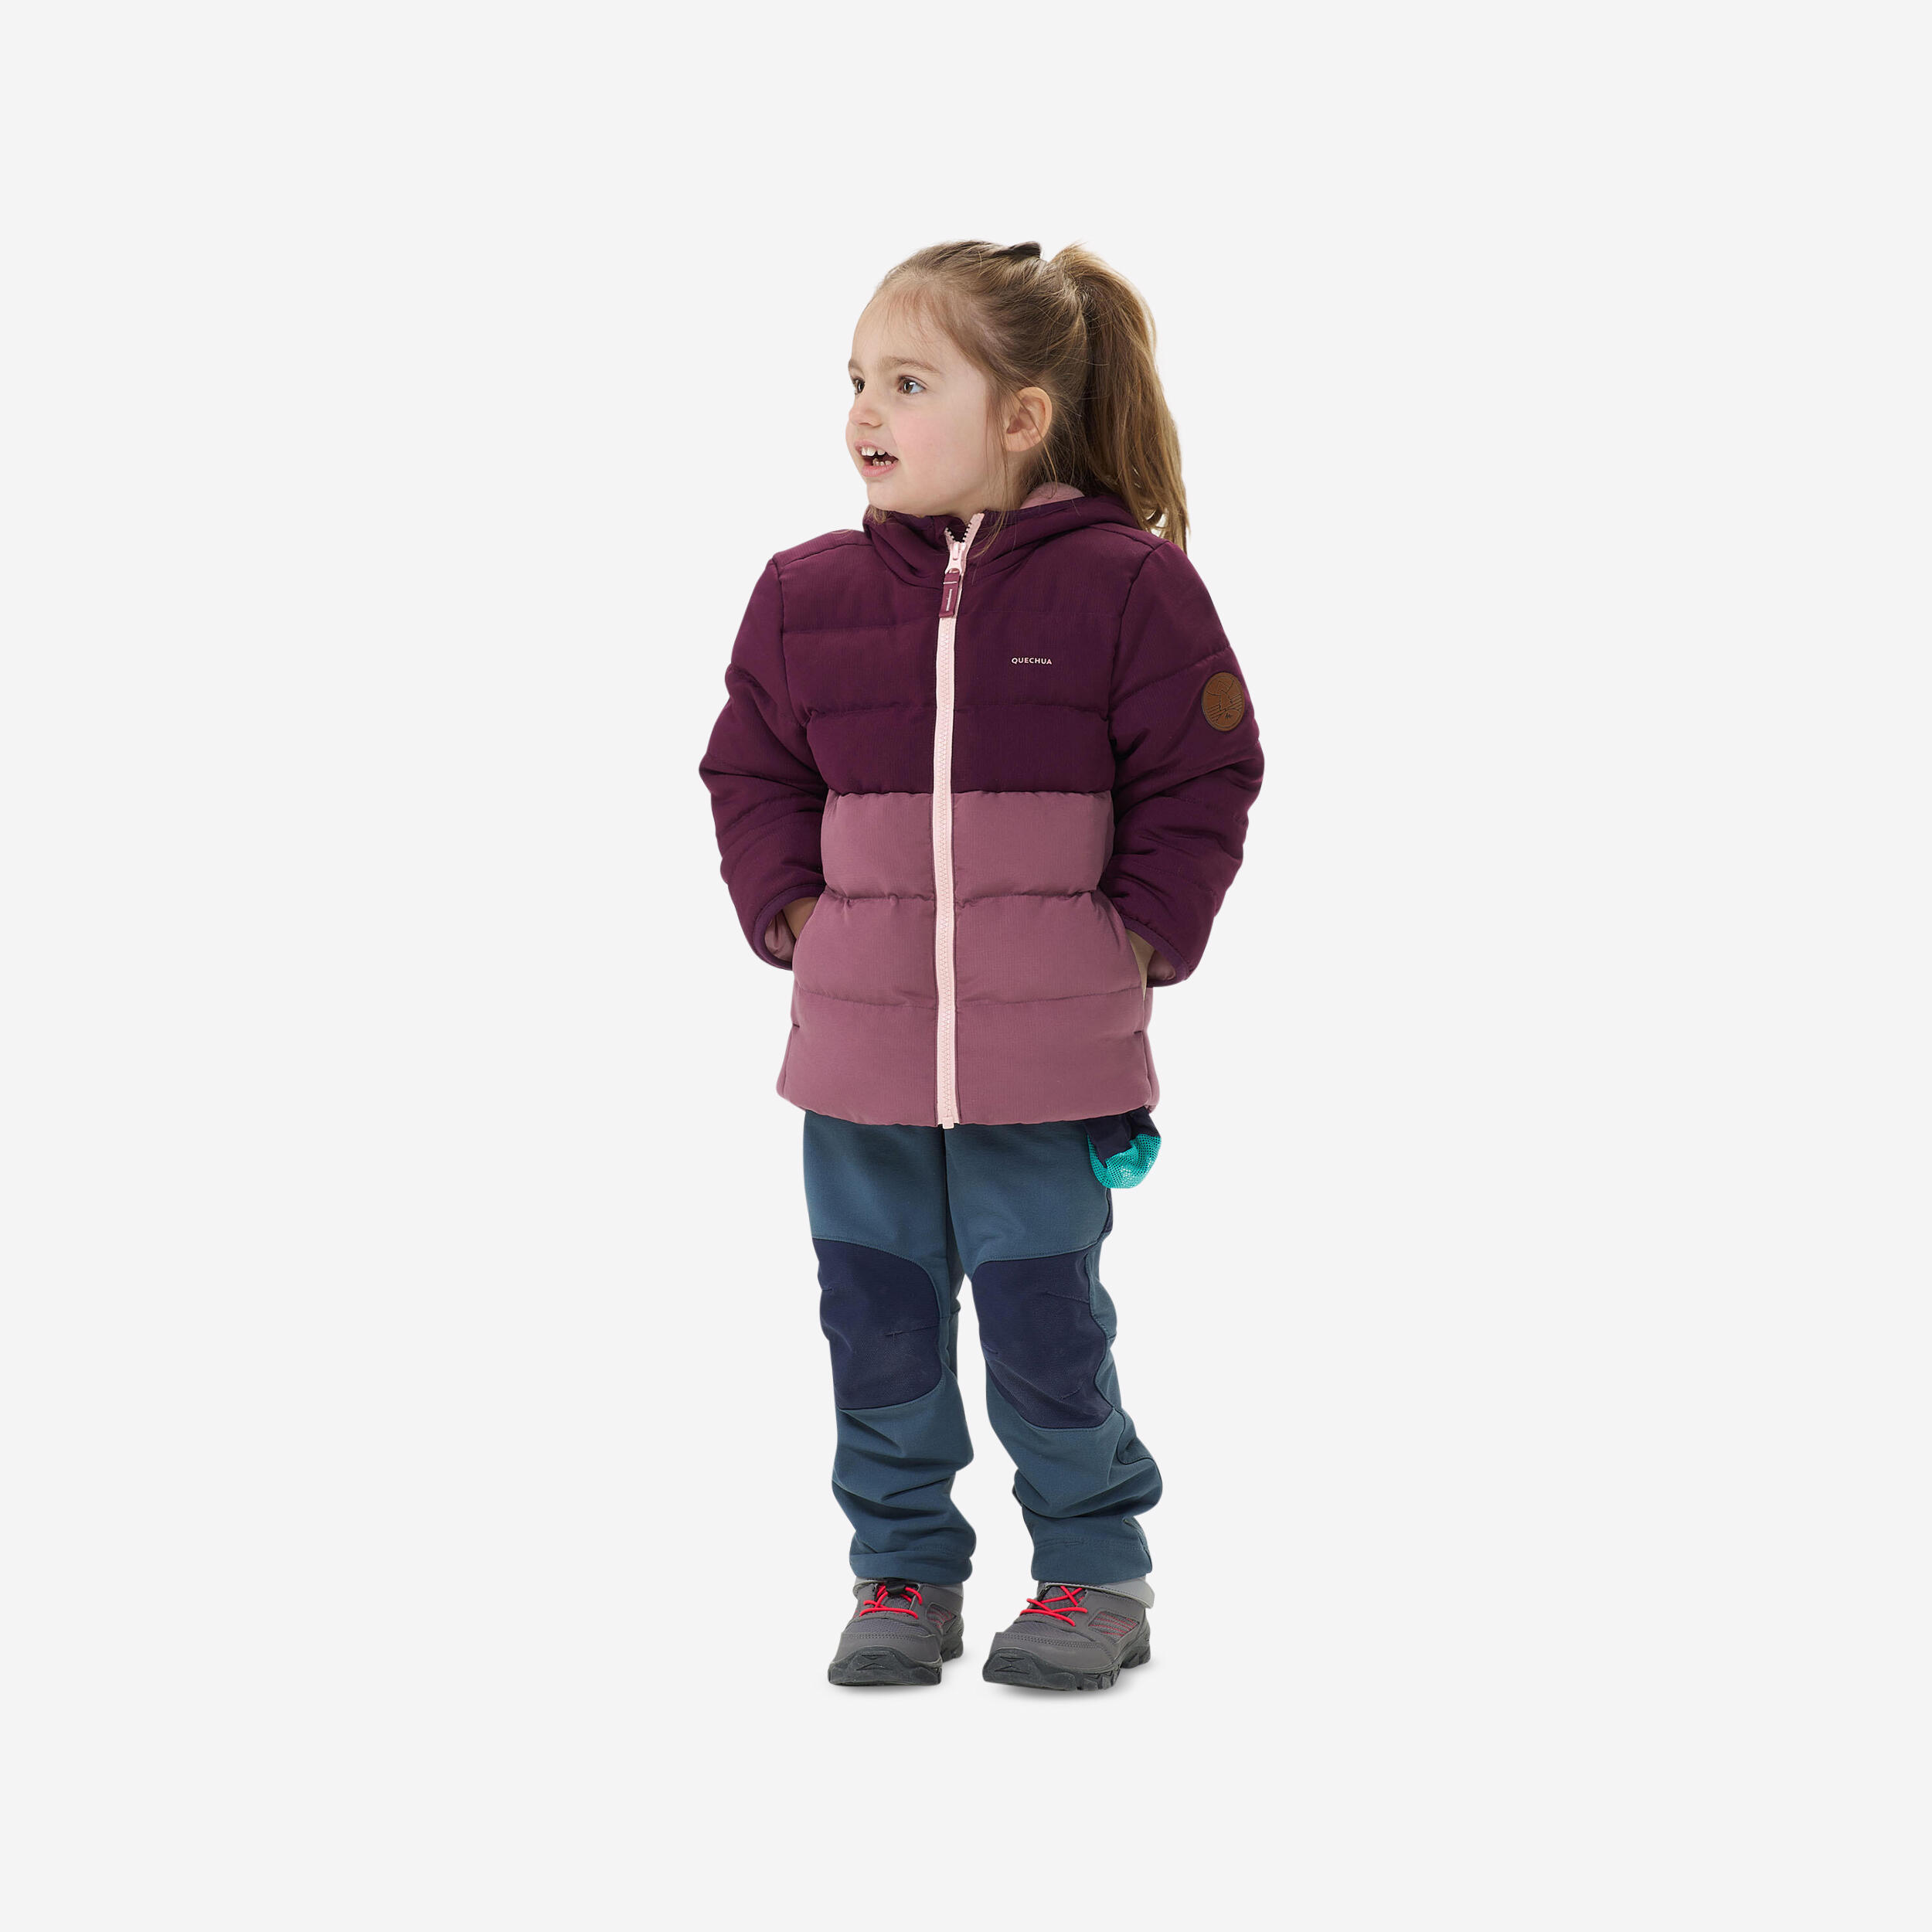 Kids’ Hiking Padded Jacket - Aged 2-6 - Purple 1/9